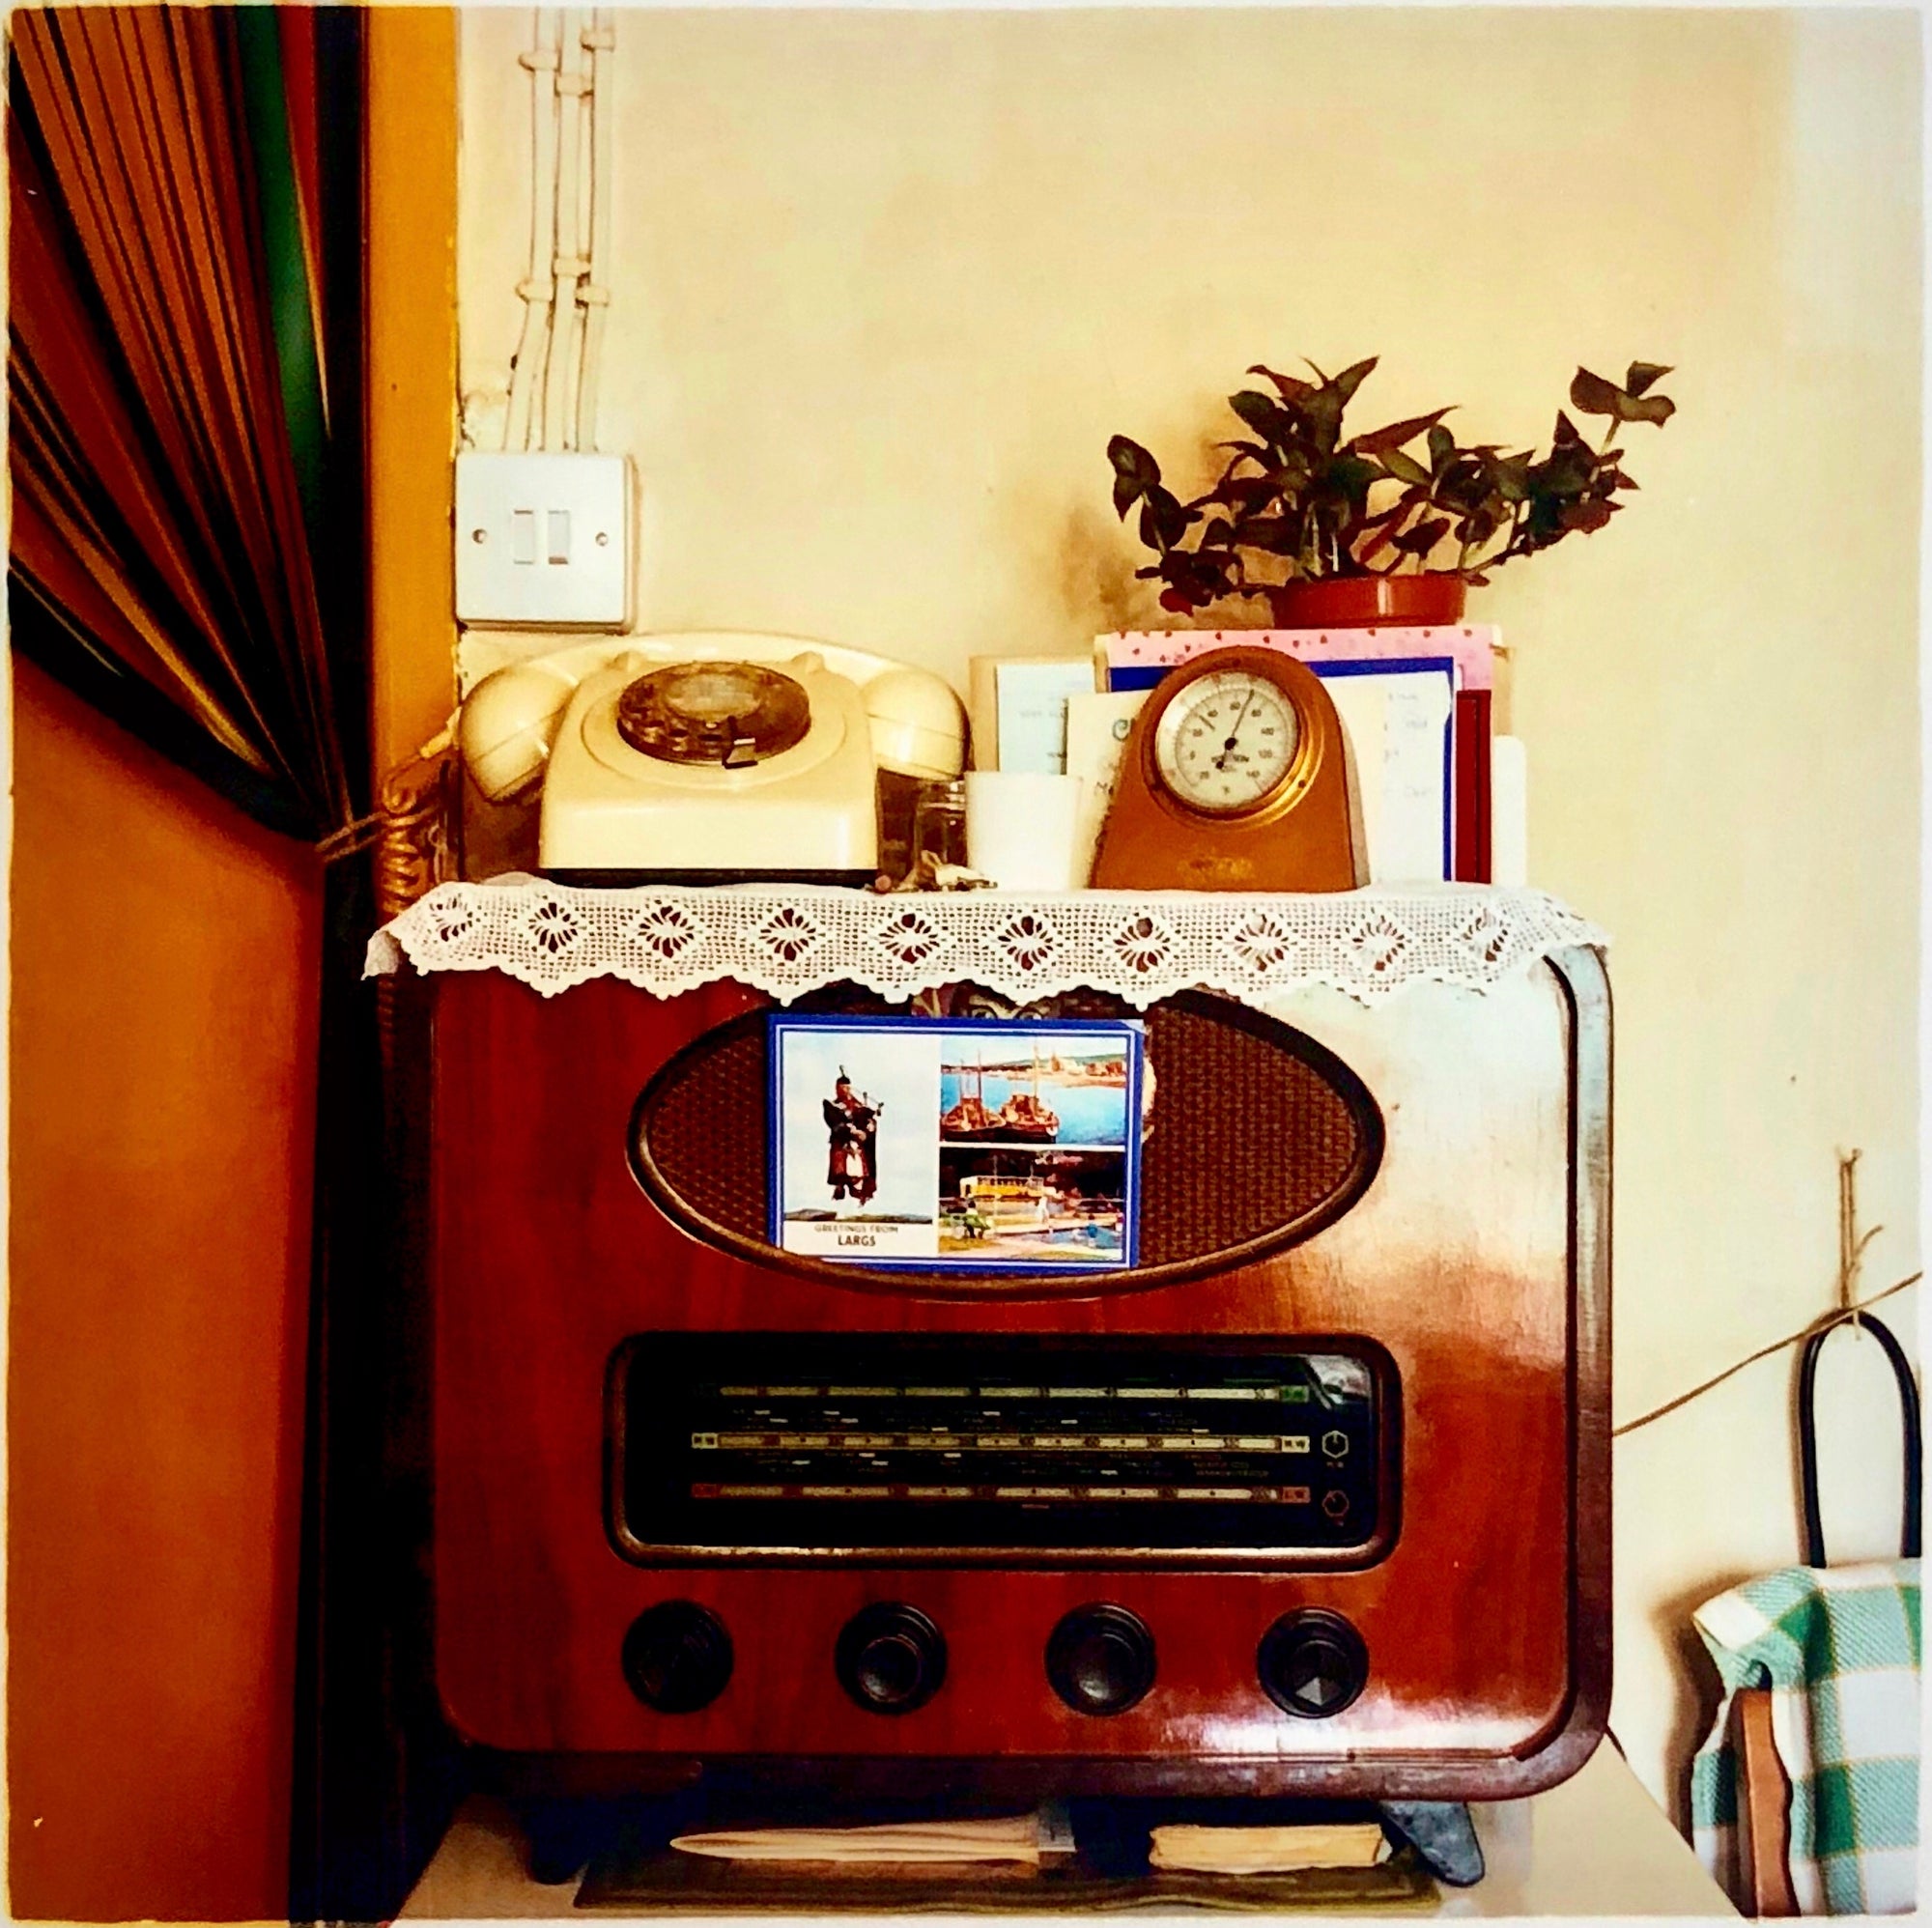 A vintage radio in a vintage home in Cambridge.